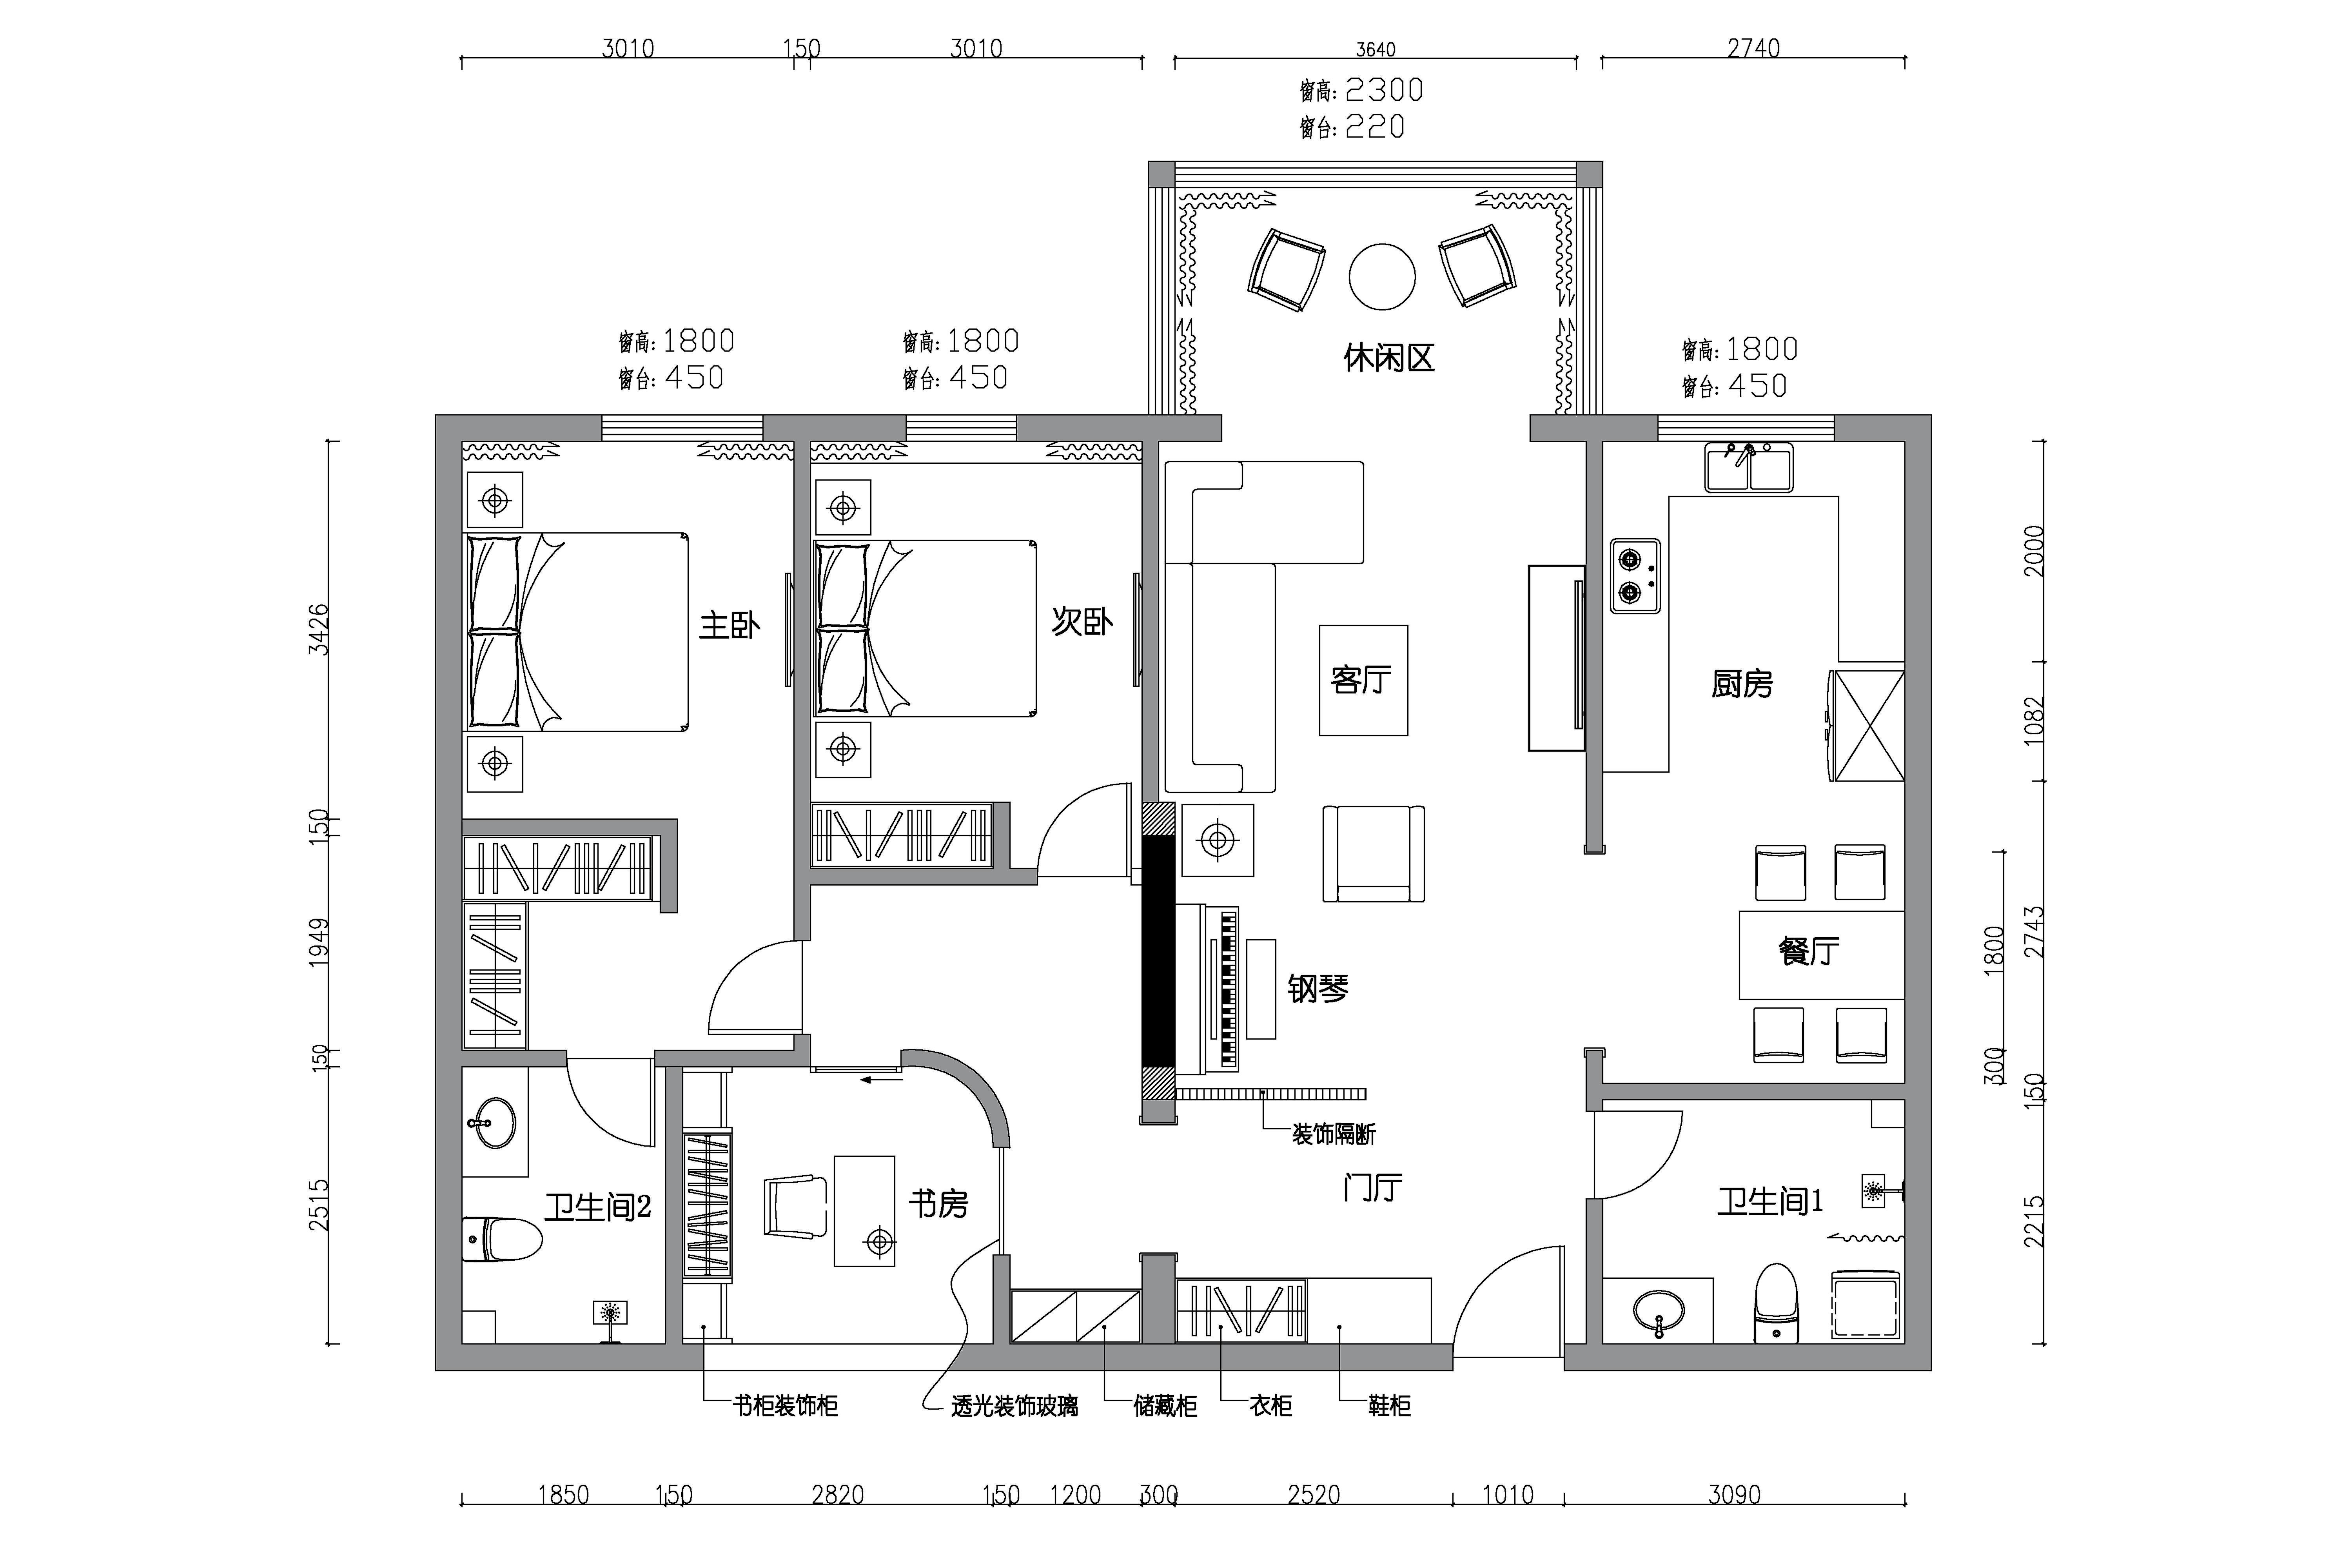  【户型优化第5期】127平三室两厅+钢琴区